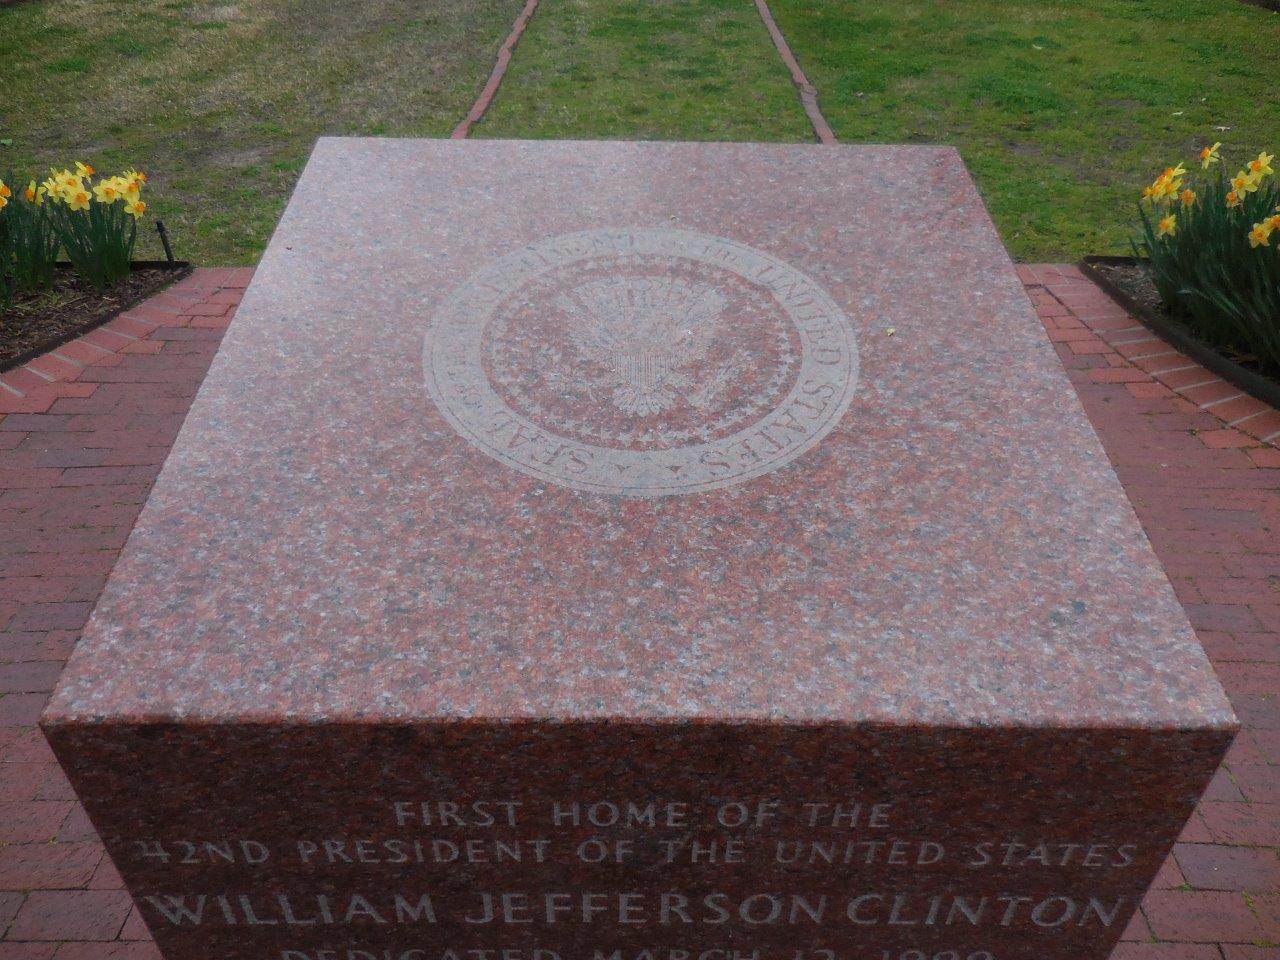 Bill Clinton historical marker